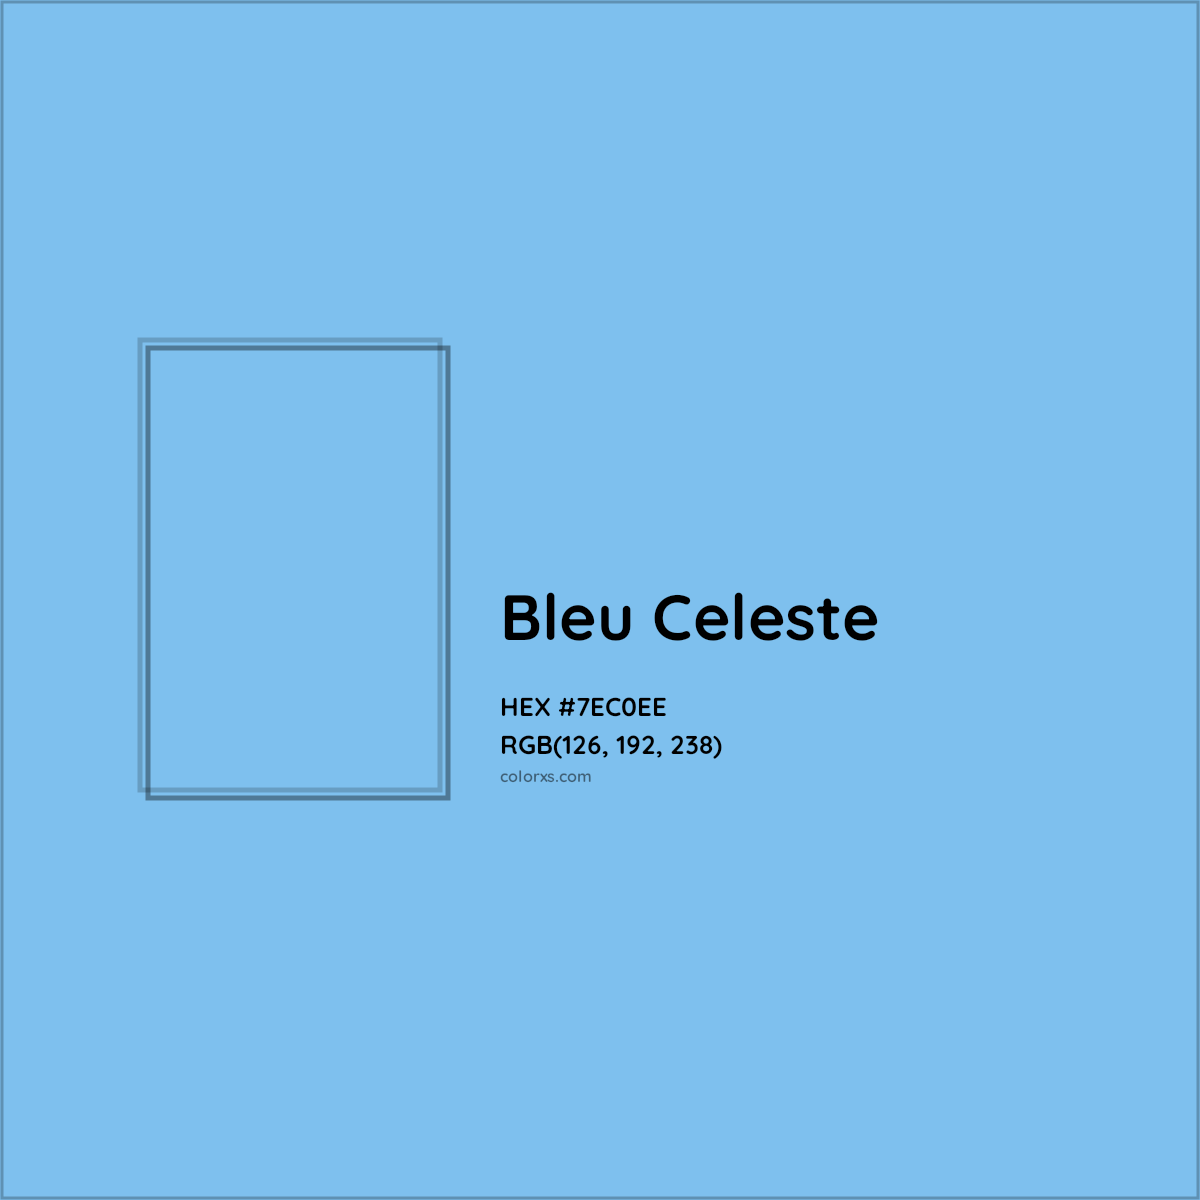 Celeste Blue